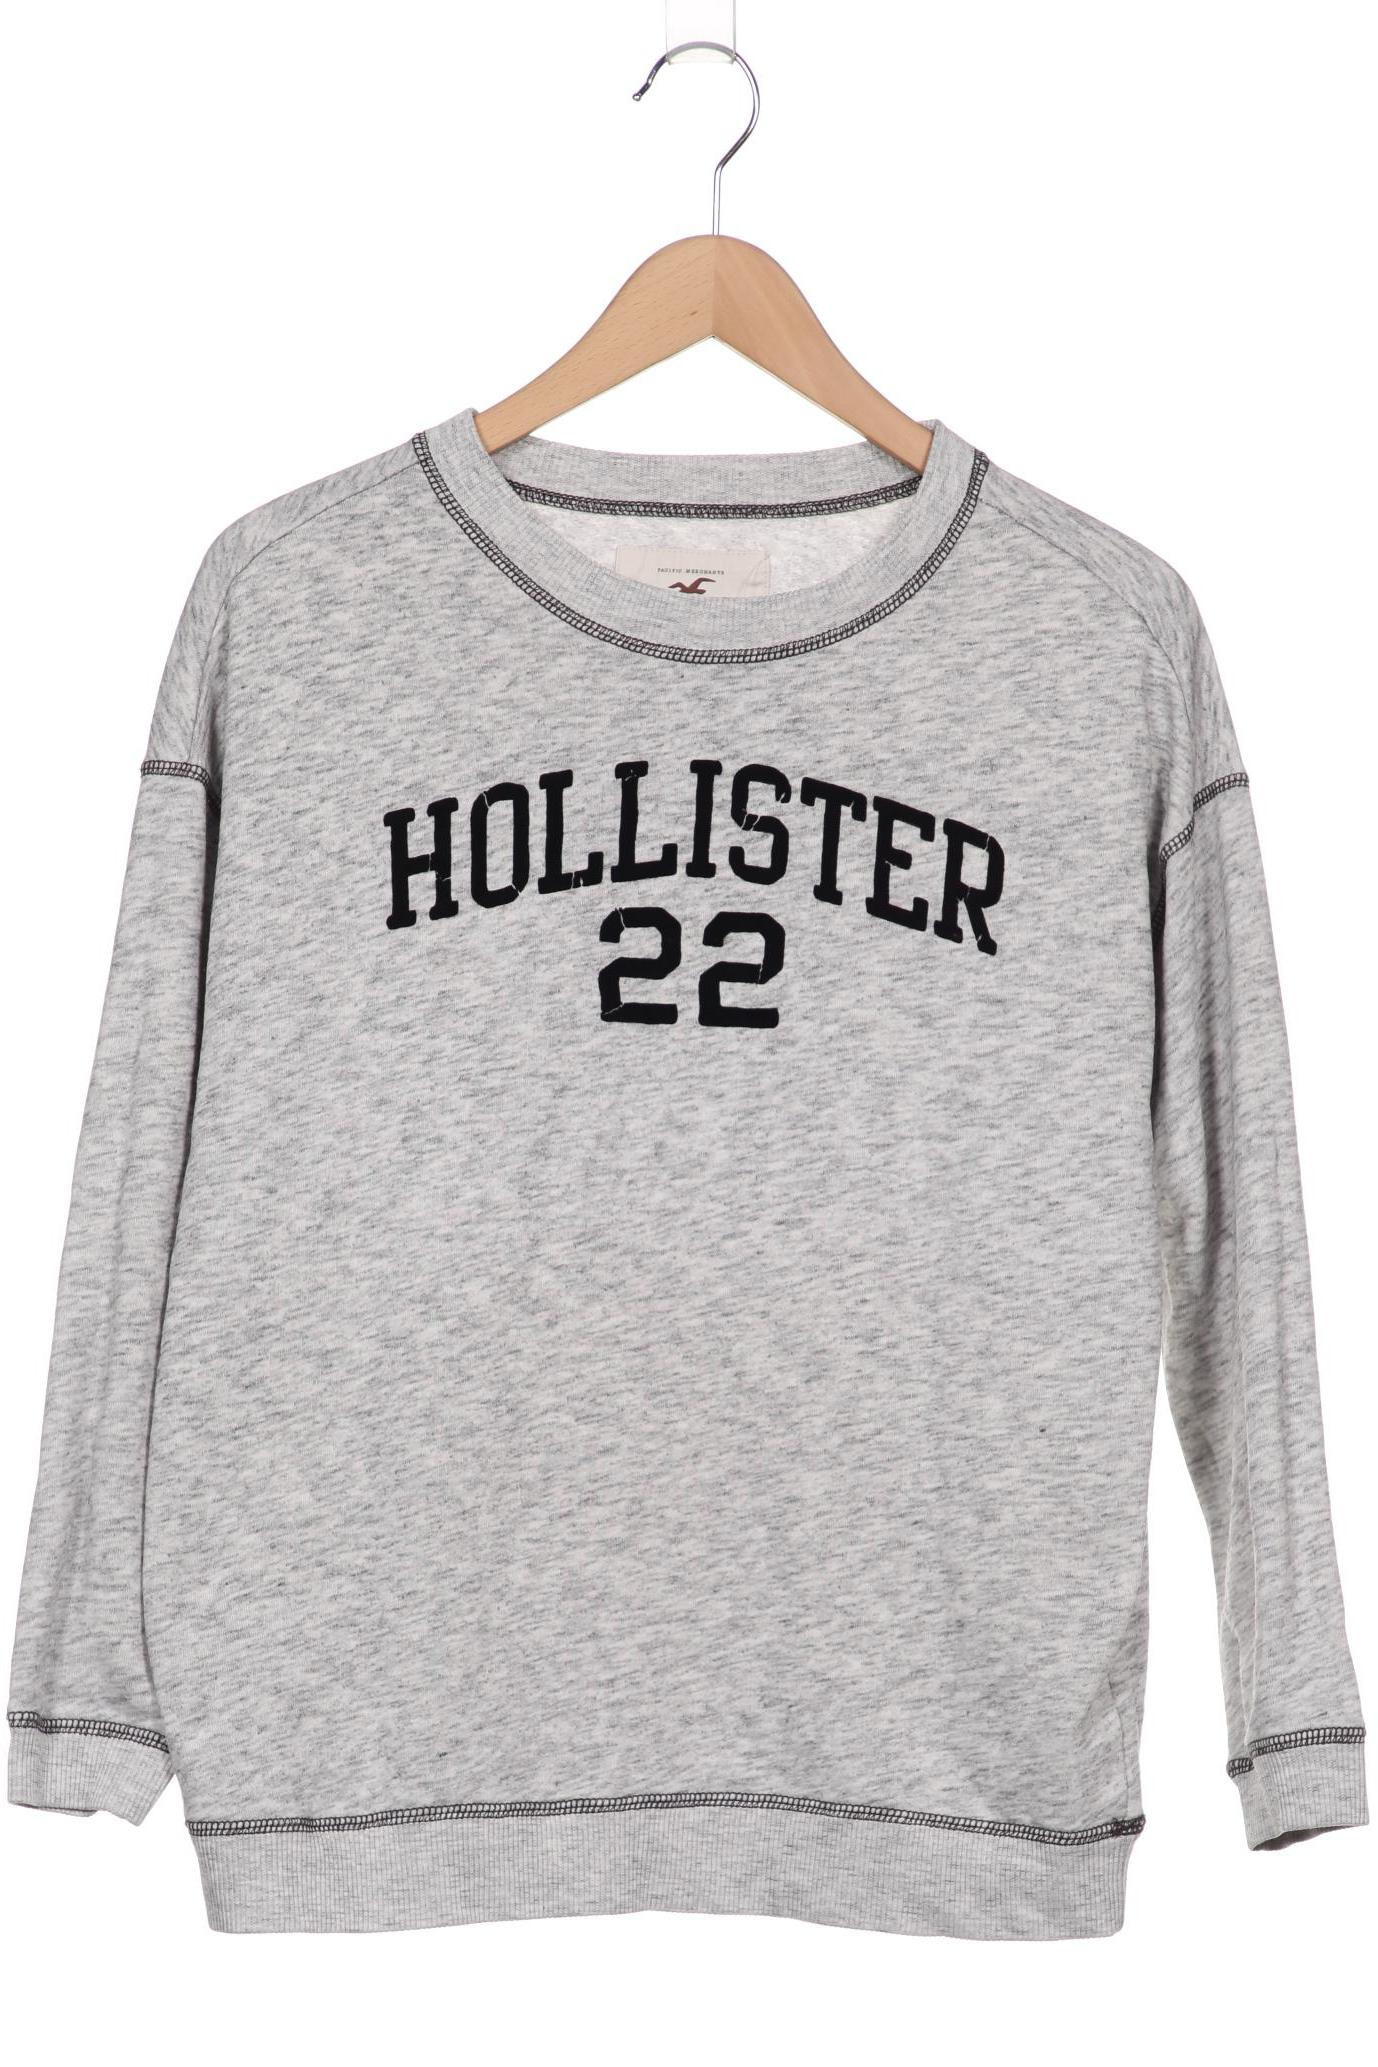 Hollister Damen Sweatshirt, grau, Gr. 34 von Hollister